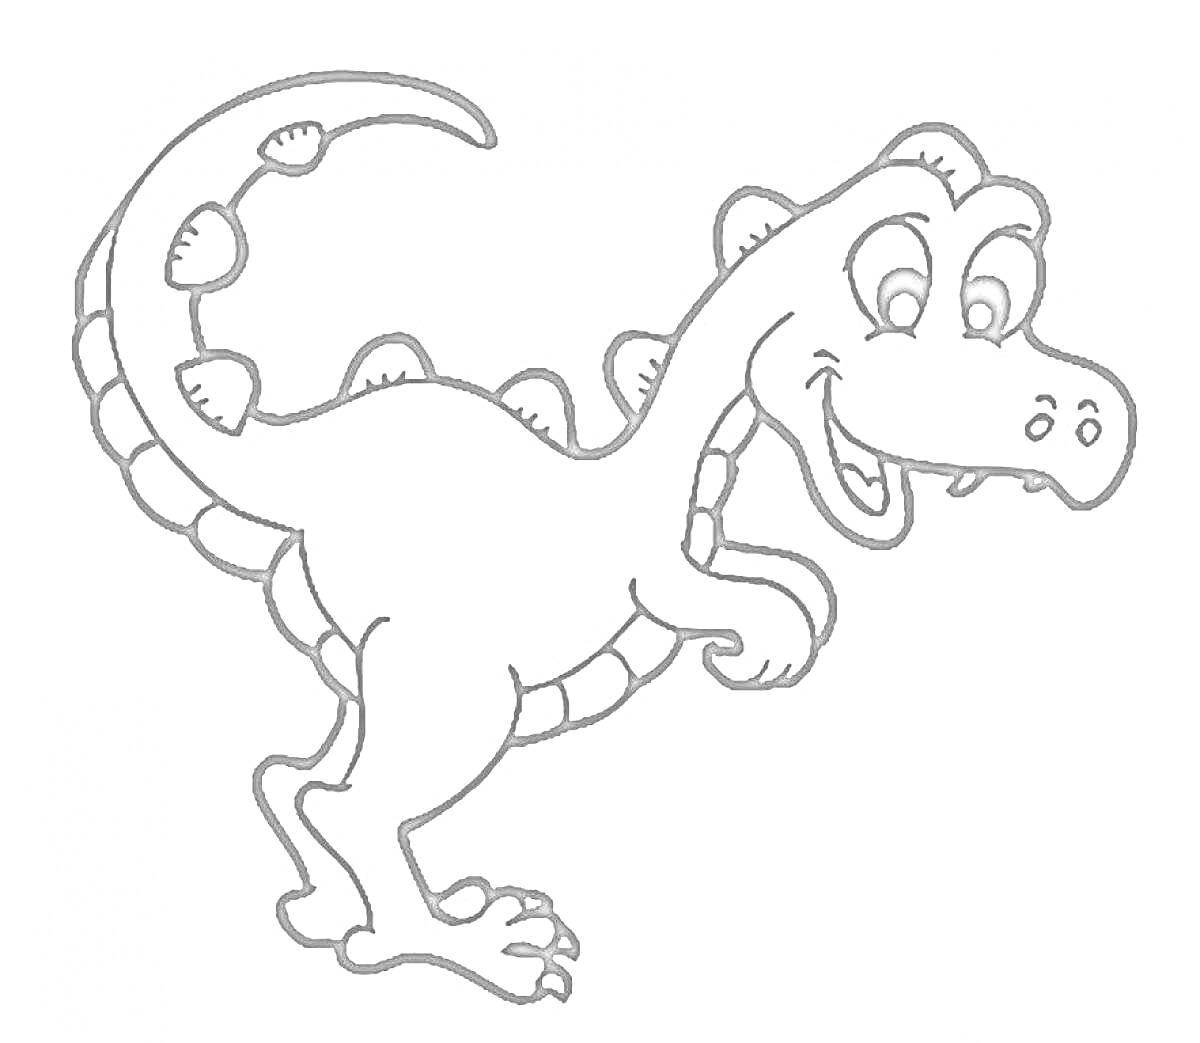 Раскраска Динозавр с шипами на спине и хвосте, улыбающийся и стоящий на двух ногах